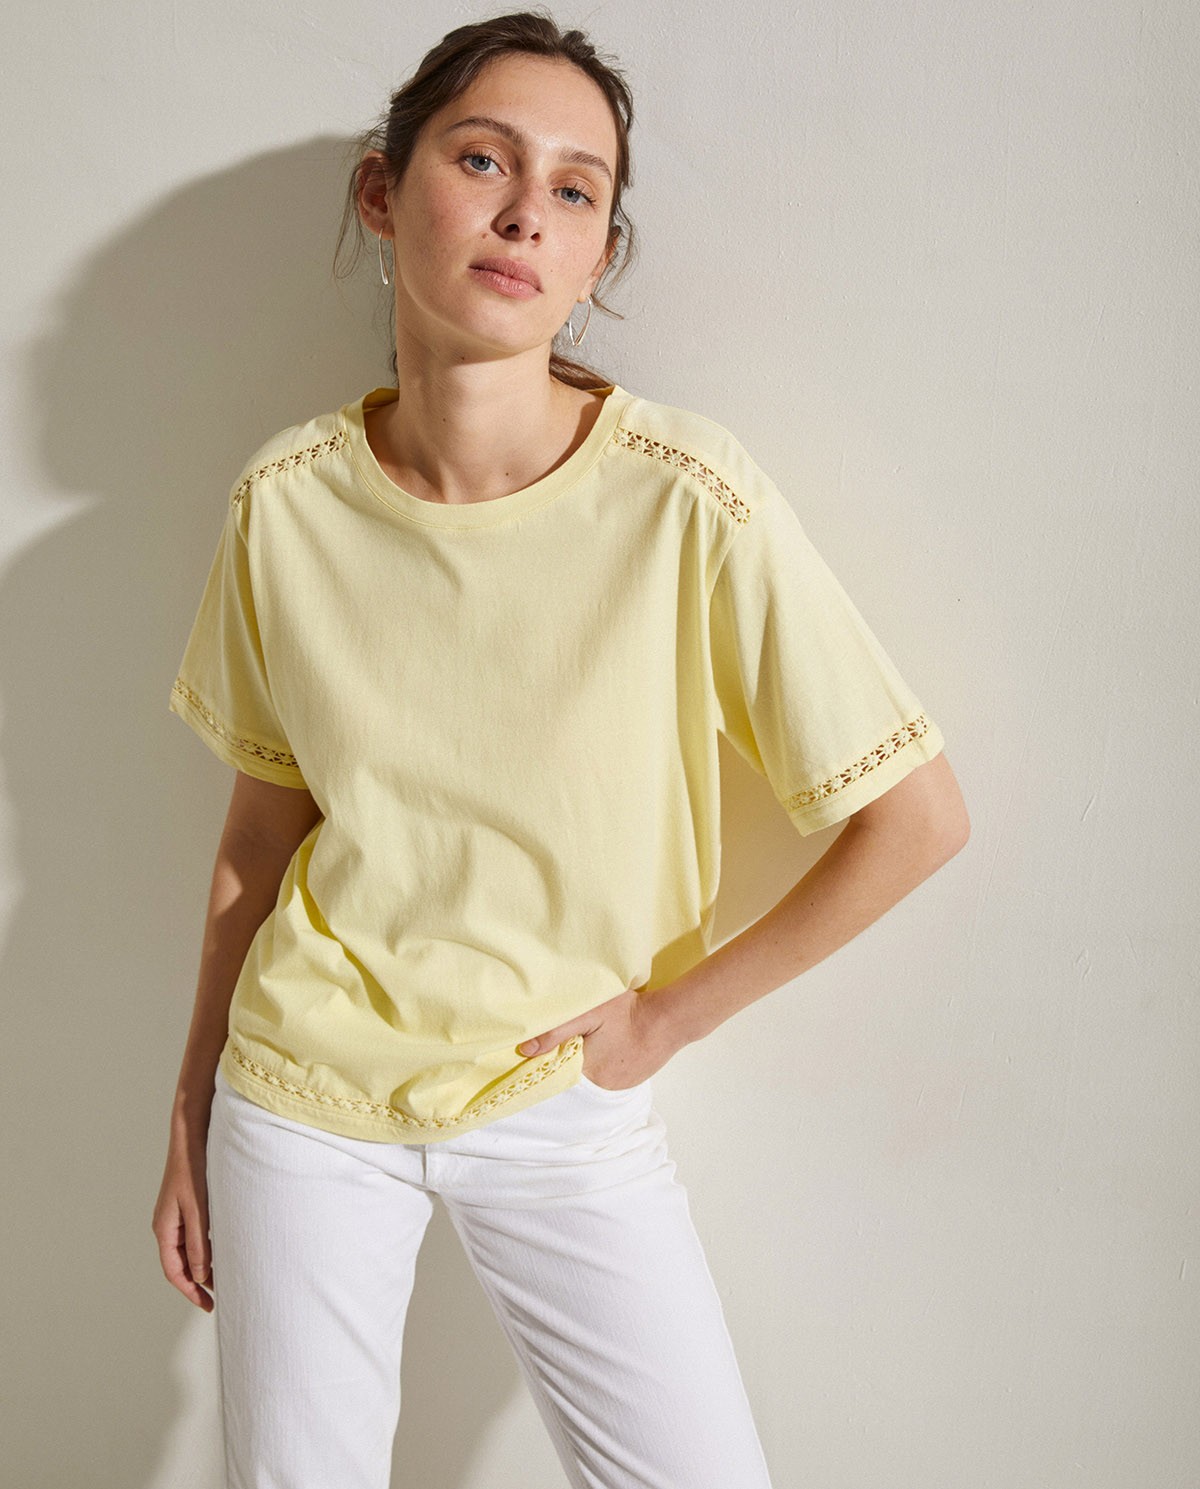 Cotton t-shirt decorative stitching Yellow 3